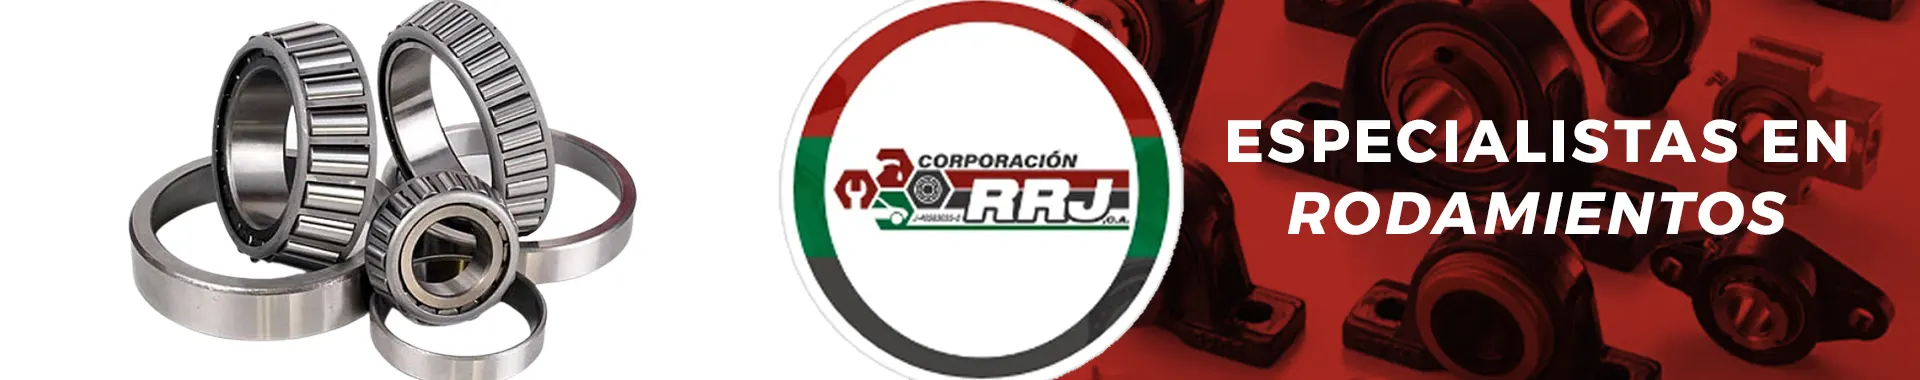 Imagen 1 del perfil de Corporación RRJ